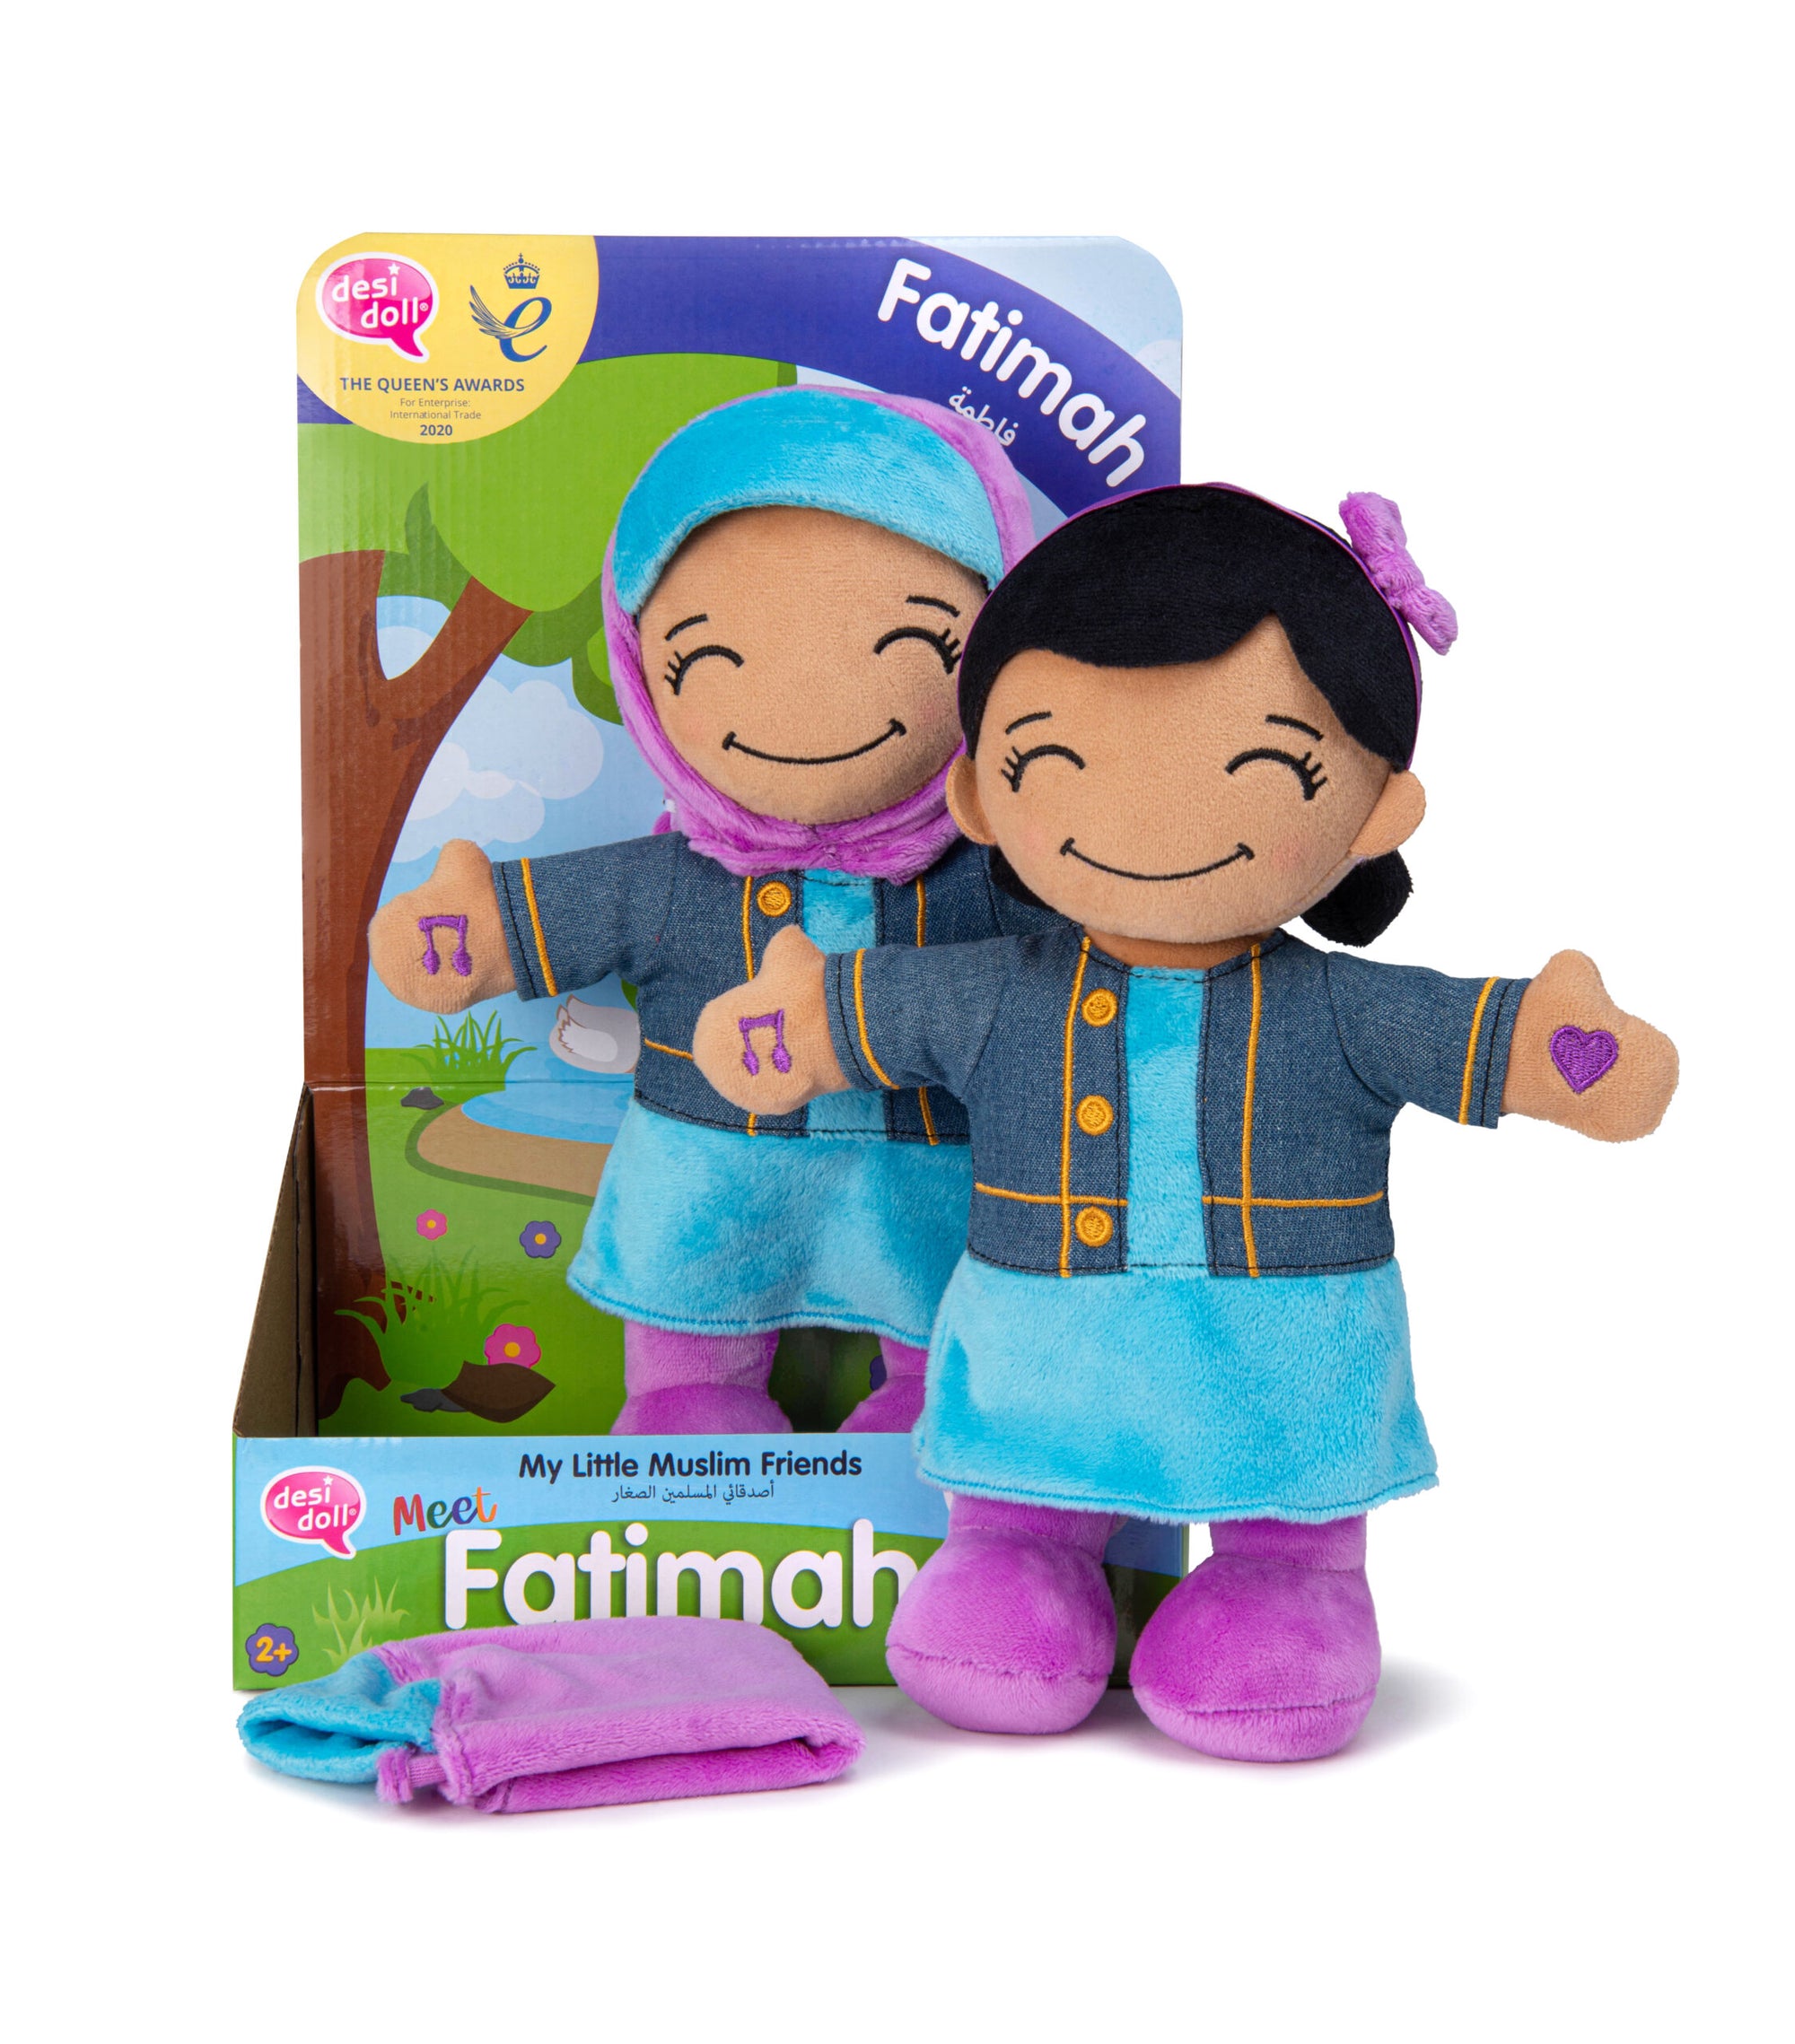 Fatimah - My Little Muslim Friends Desi Doll